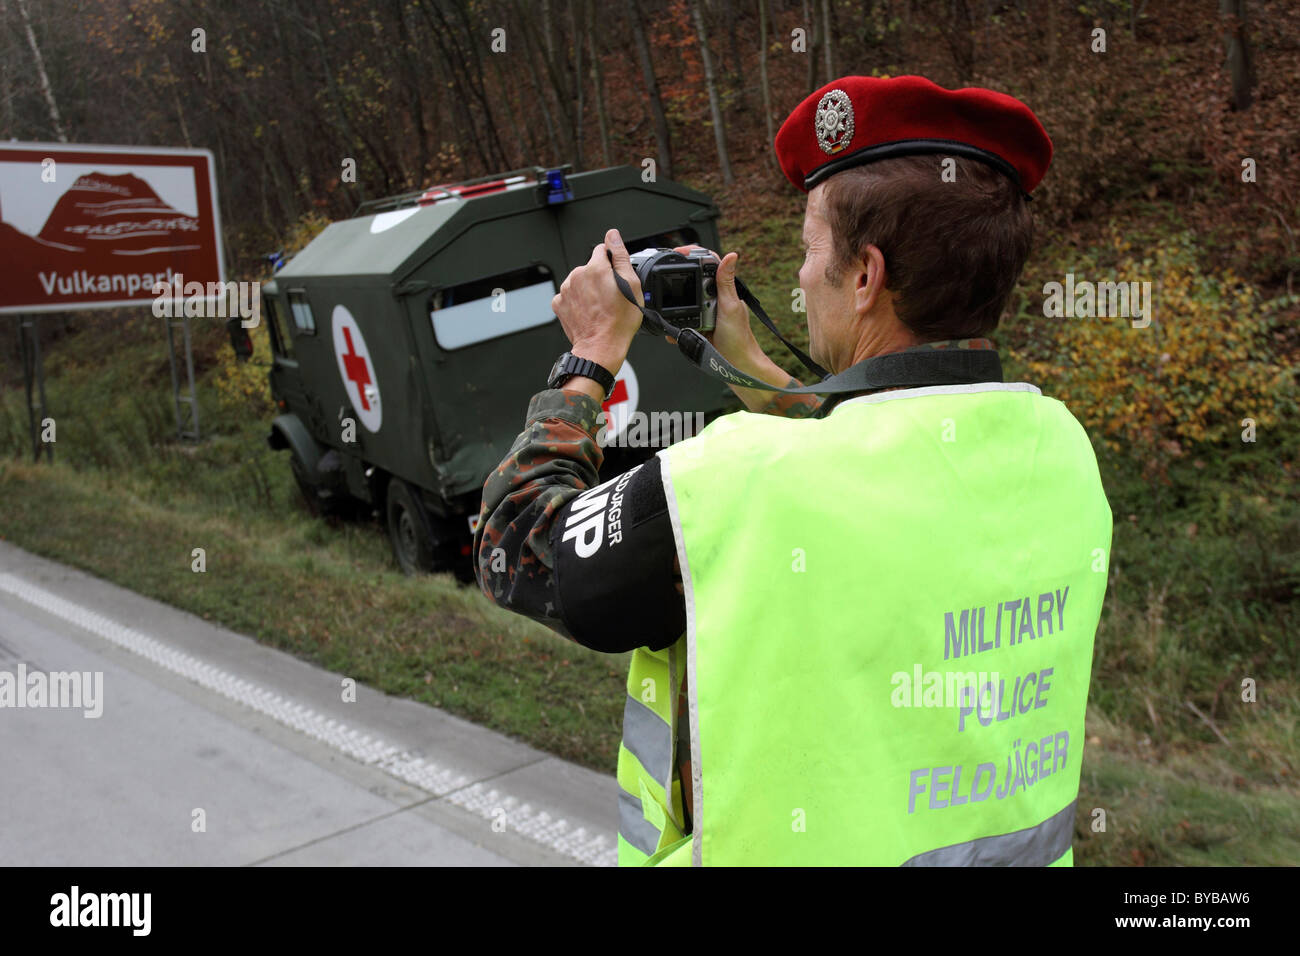 Feldjaeger, un poliziotto militare della Bundeswehr, Germania delle forze armate, documentando la scena di un incidente con un militare Foto Stock